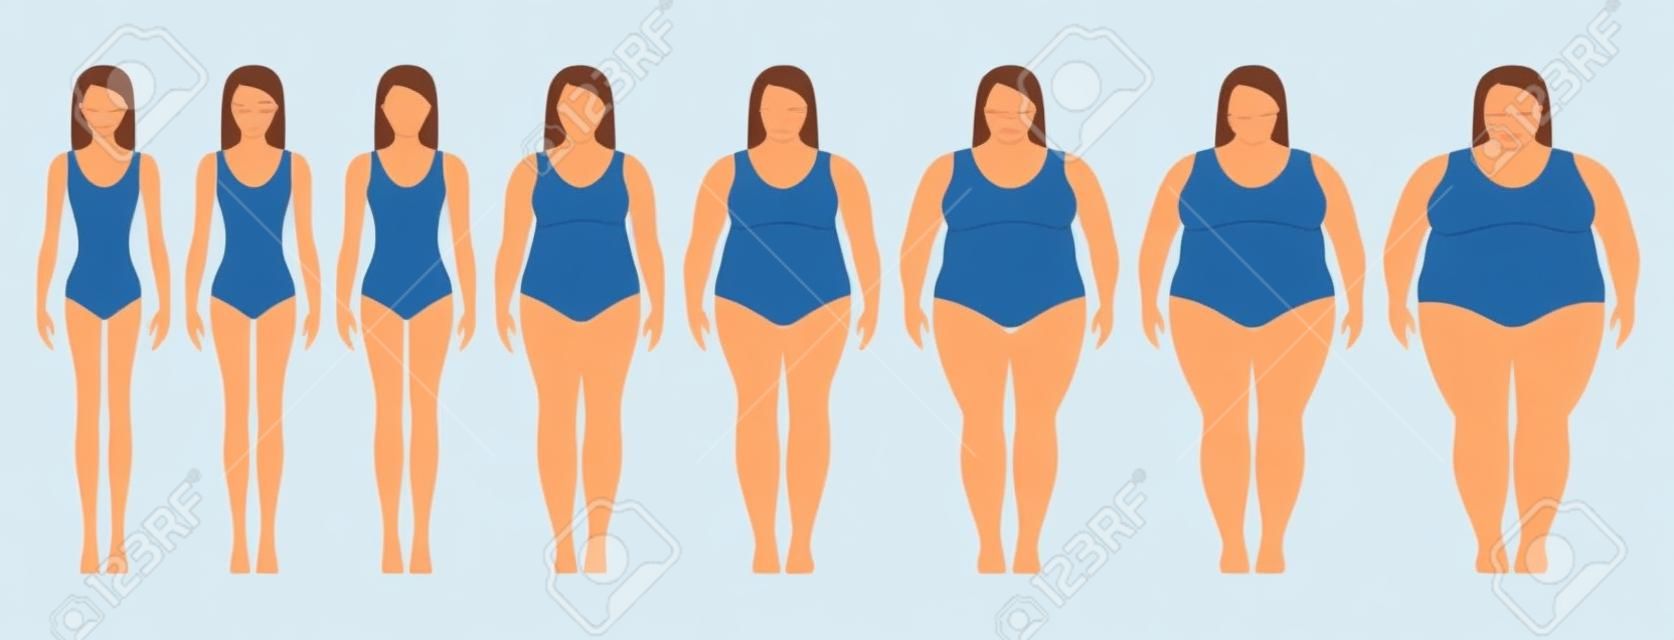 Illustrazione vettoriale di donne con peso diverso dall'anoressia all'estremo obeso. Indice di massa corporea, concetto di perdita di peso.